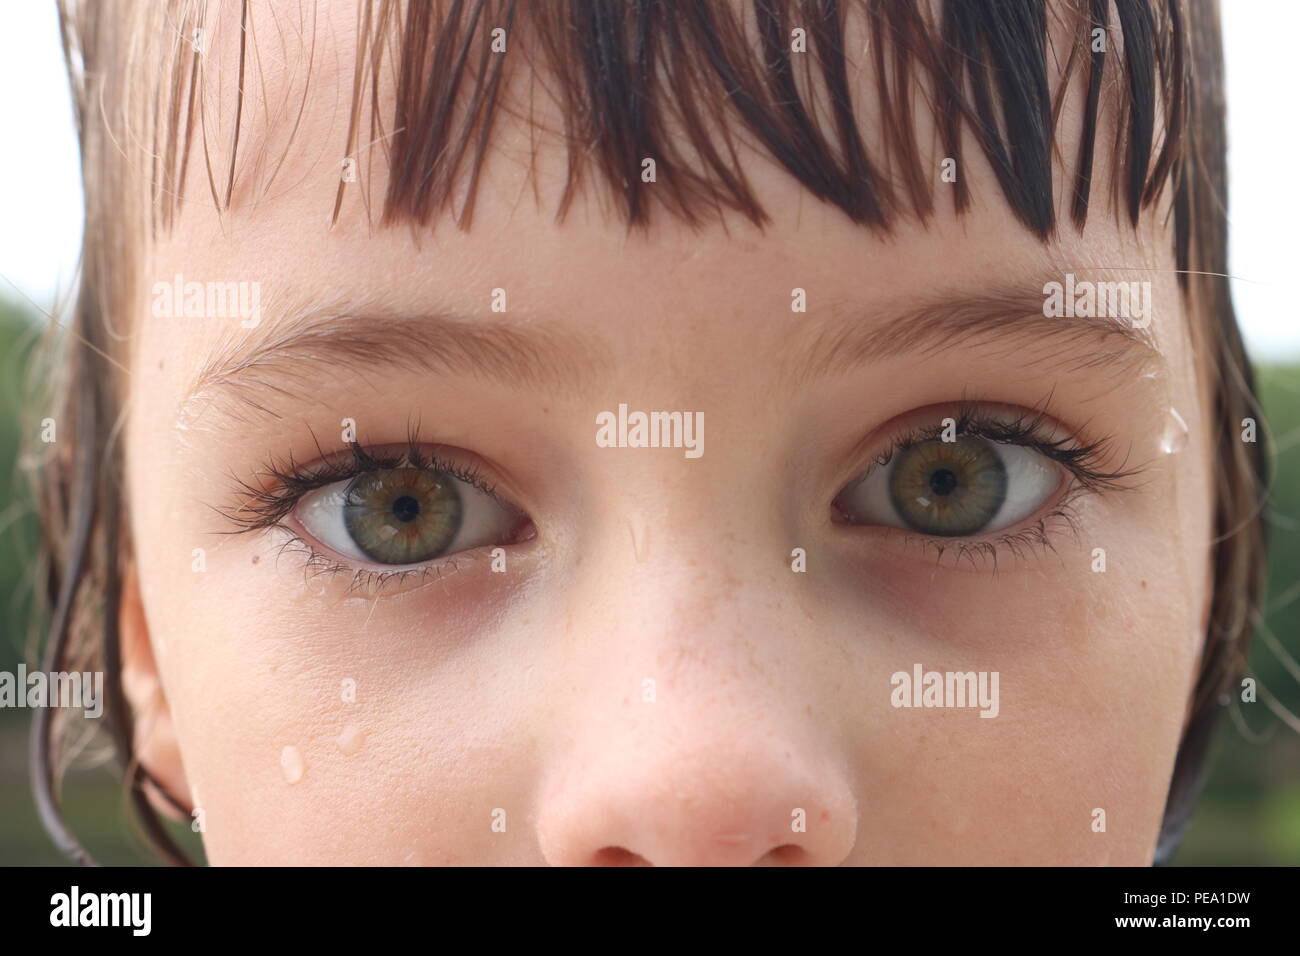 Nahaufnahme eines Kindes mit großen grünen Augen und eine intensive Angst Blick Stockfoto